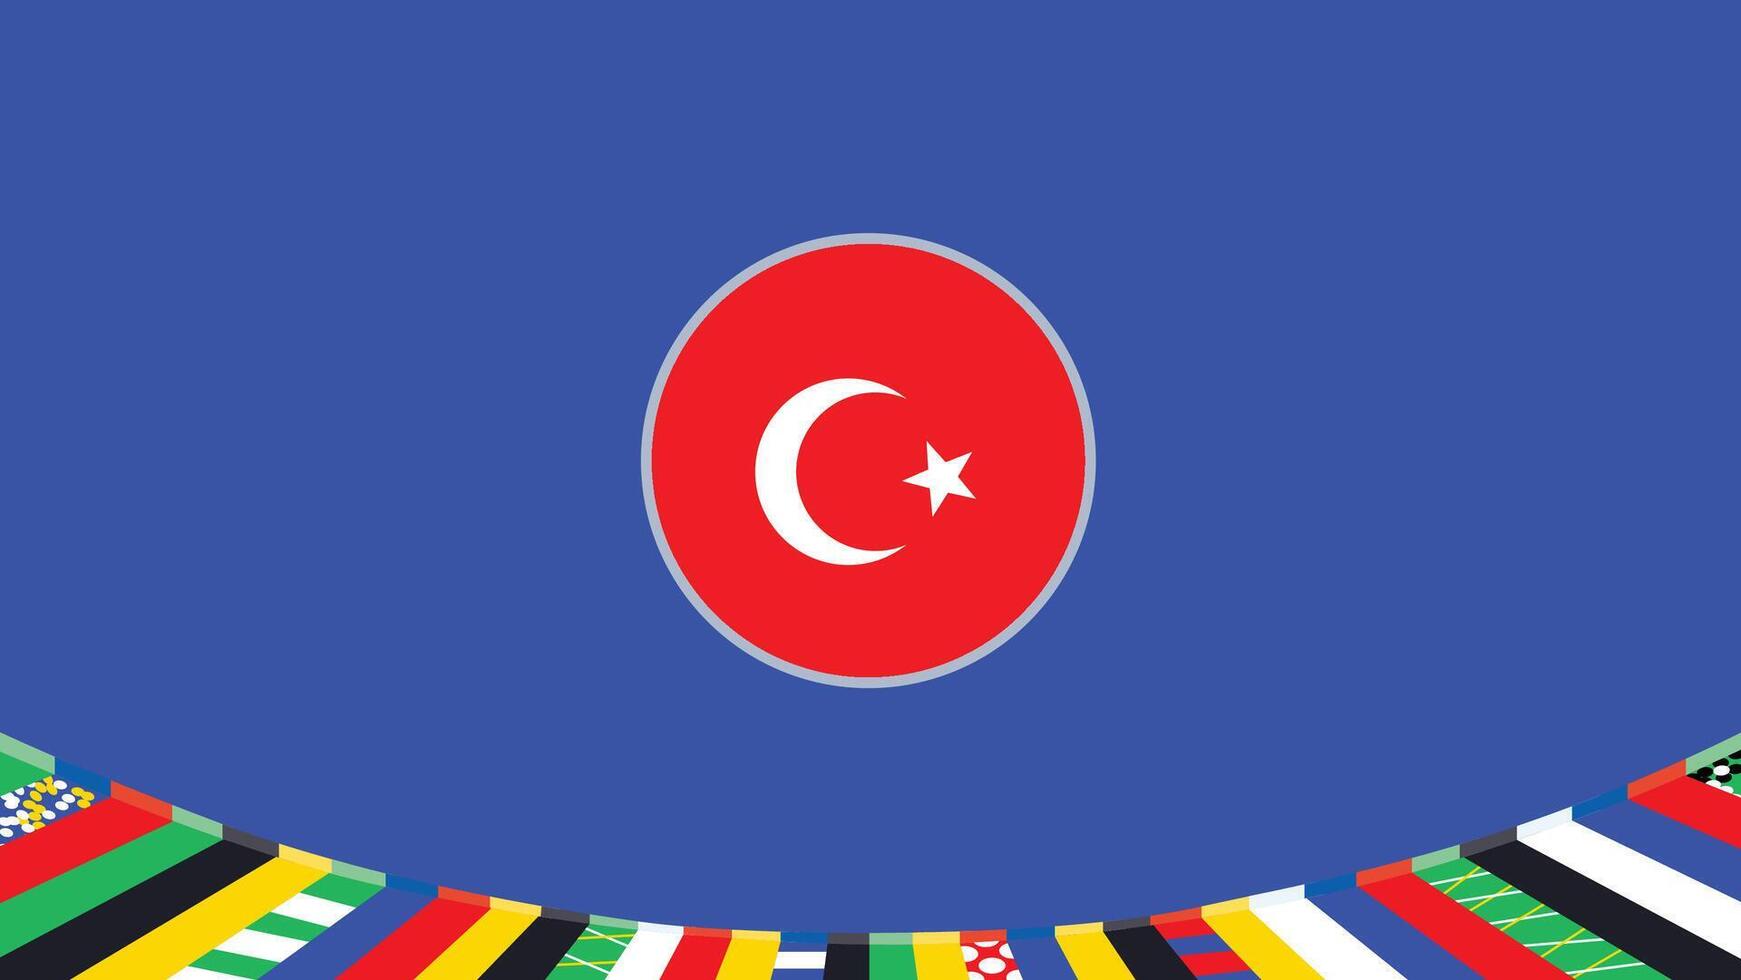 turkiye emblema bandera europeo naciones 2024 equipos países europeo Alemania fútbol americano símbolo logo diseño ilustración vector